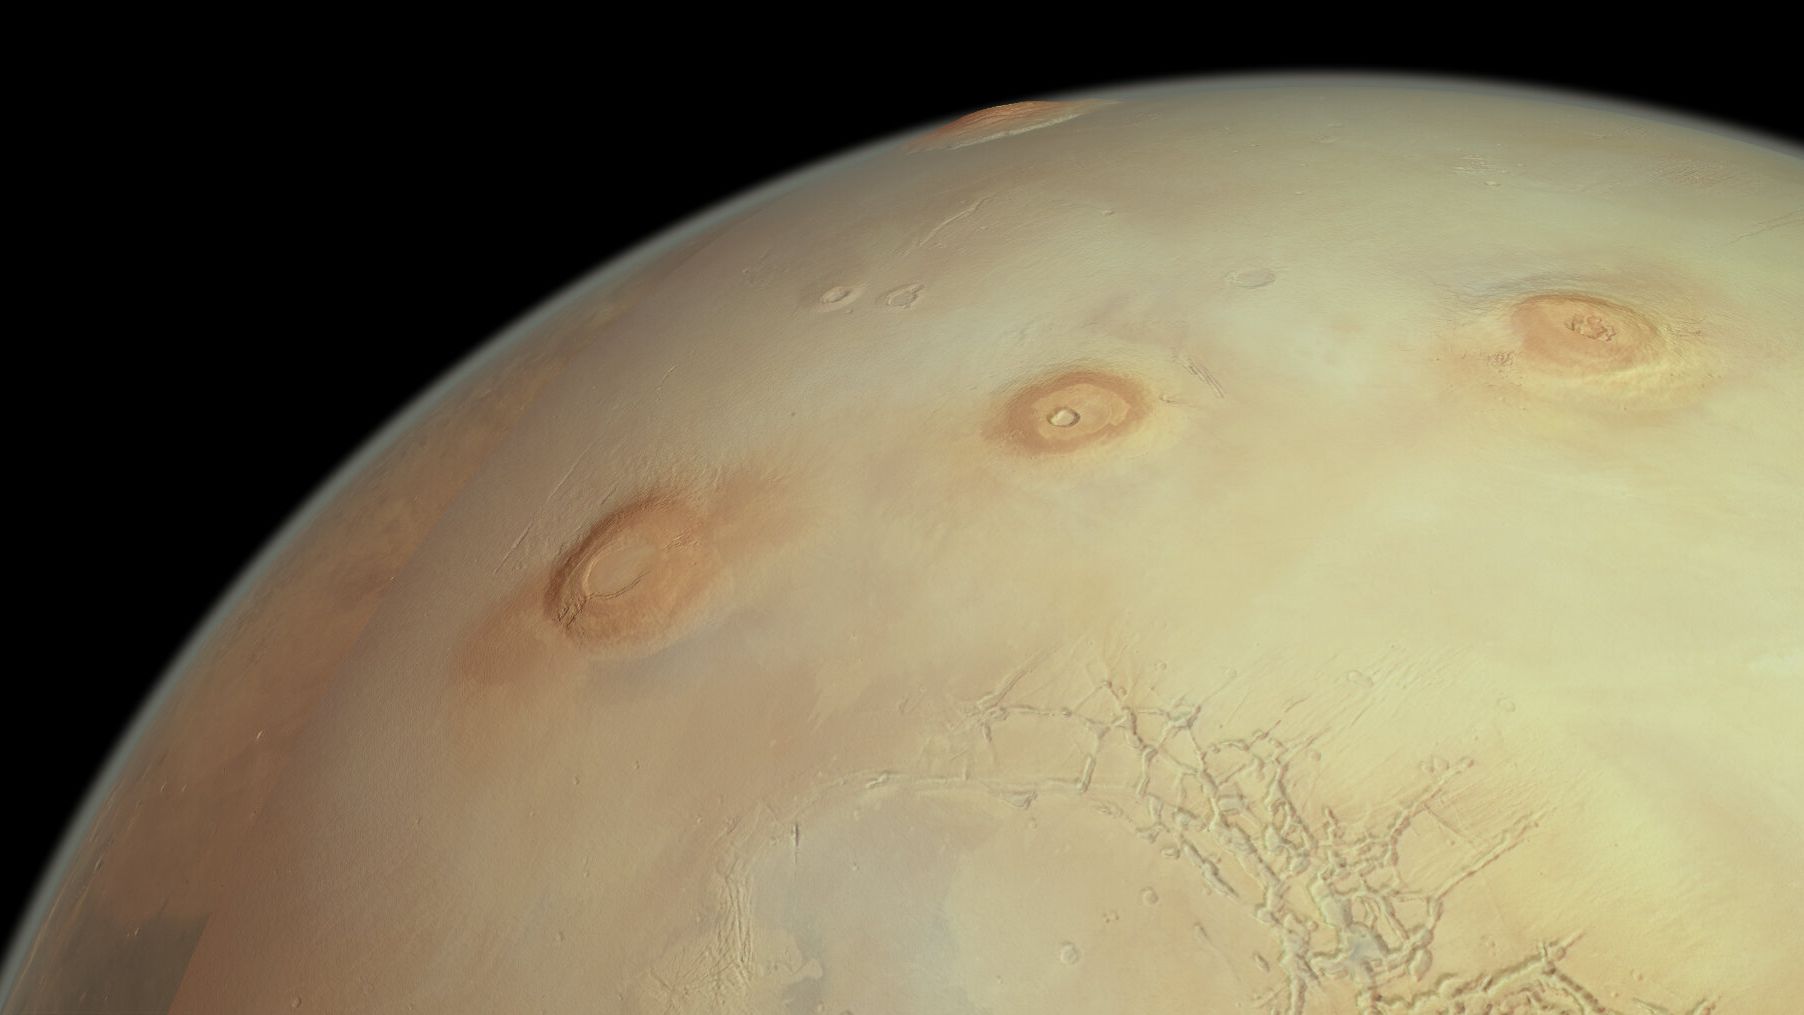 Esta perspectiva oblíqua da superfície de Marte celebra o marco da órbita de número 25 mil realizada pela missão Mars Express, da ESA, em torno do planeta vermelho. A escala vertical está exagerada por um fator de aproximadamente três, fazendo com que os vulcões pareçam ser proporcionalmente três vezes mais altos do que realmente são. Três dos famosos vulcões colossais de Marte aparecem, da esquerda para a direita: Arsia Mons, Pavonis Mons e Ascraeus Mons. O monte do maior vulcão de Marte, Olympus Mons, aparece no topo da imagem, enquanto o terreno irregular do Noctis Labyrinthus está em primeiro plano